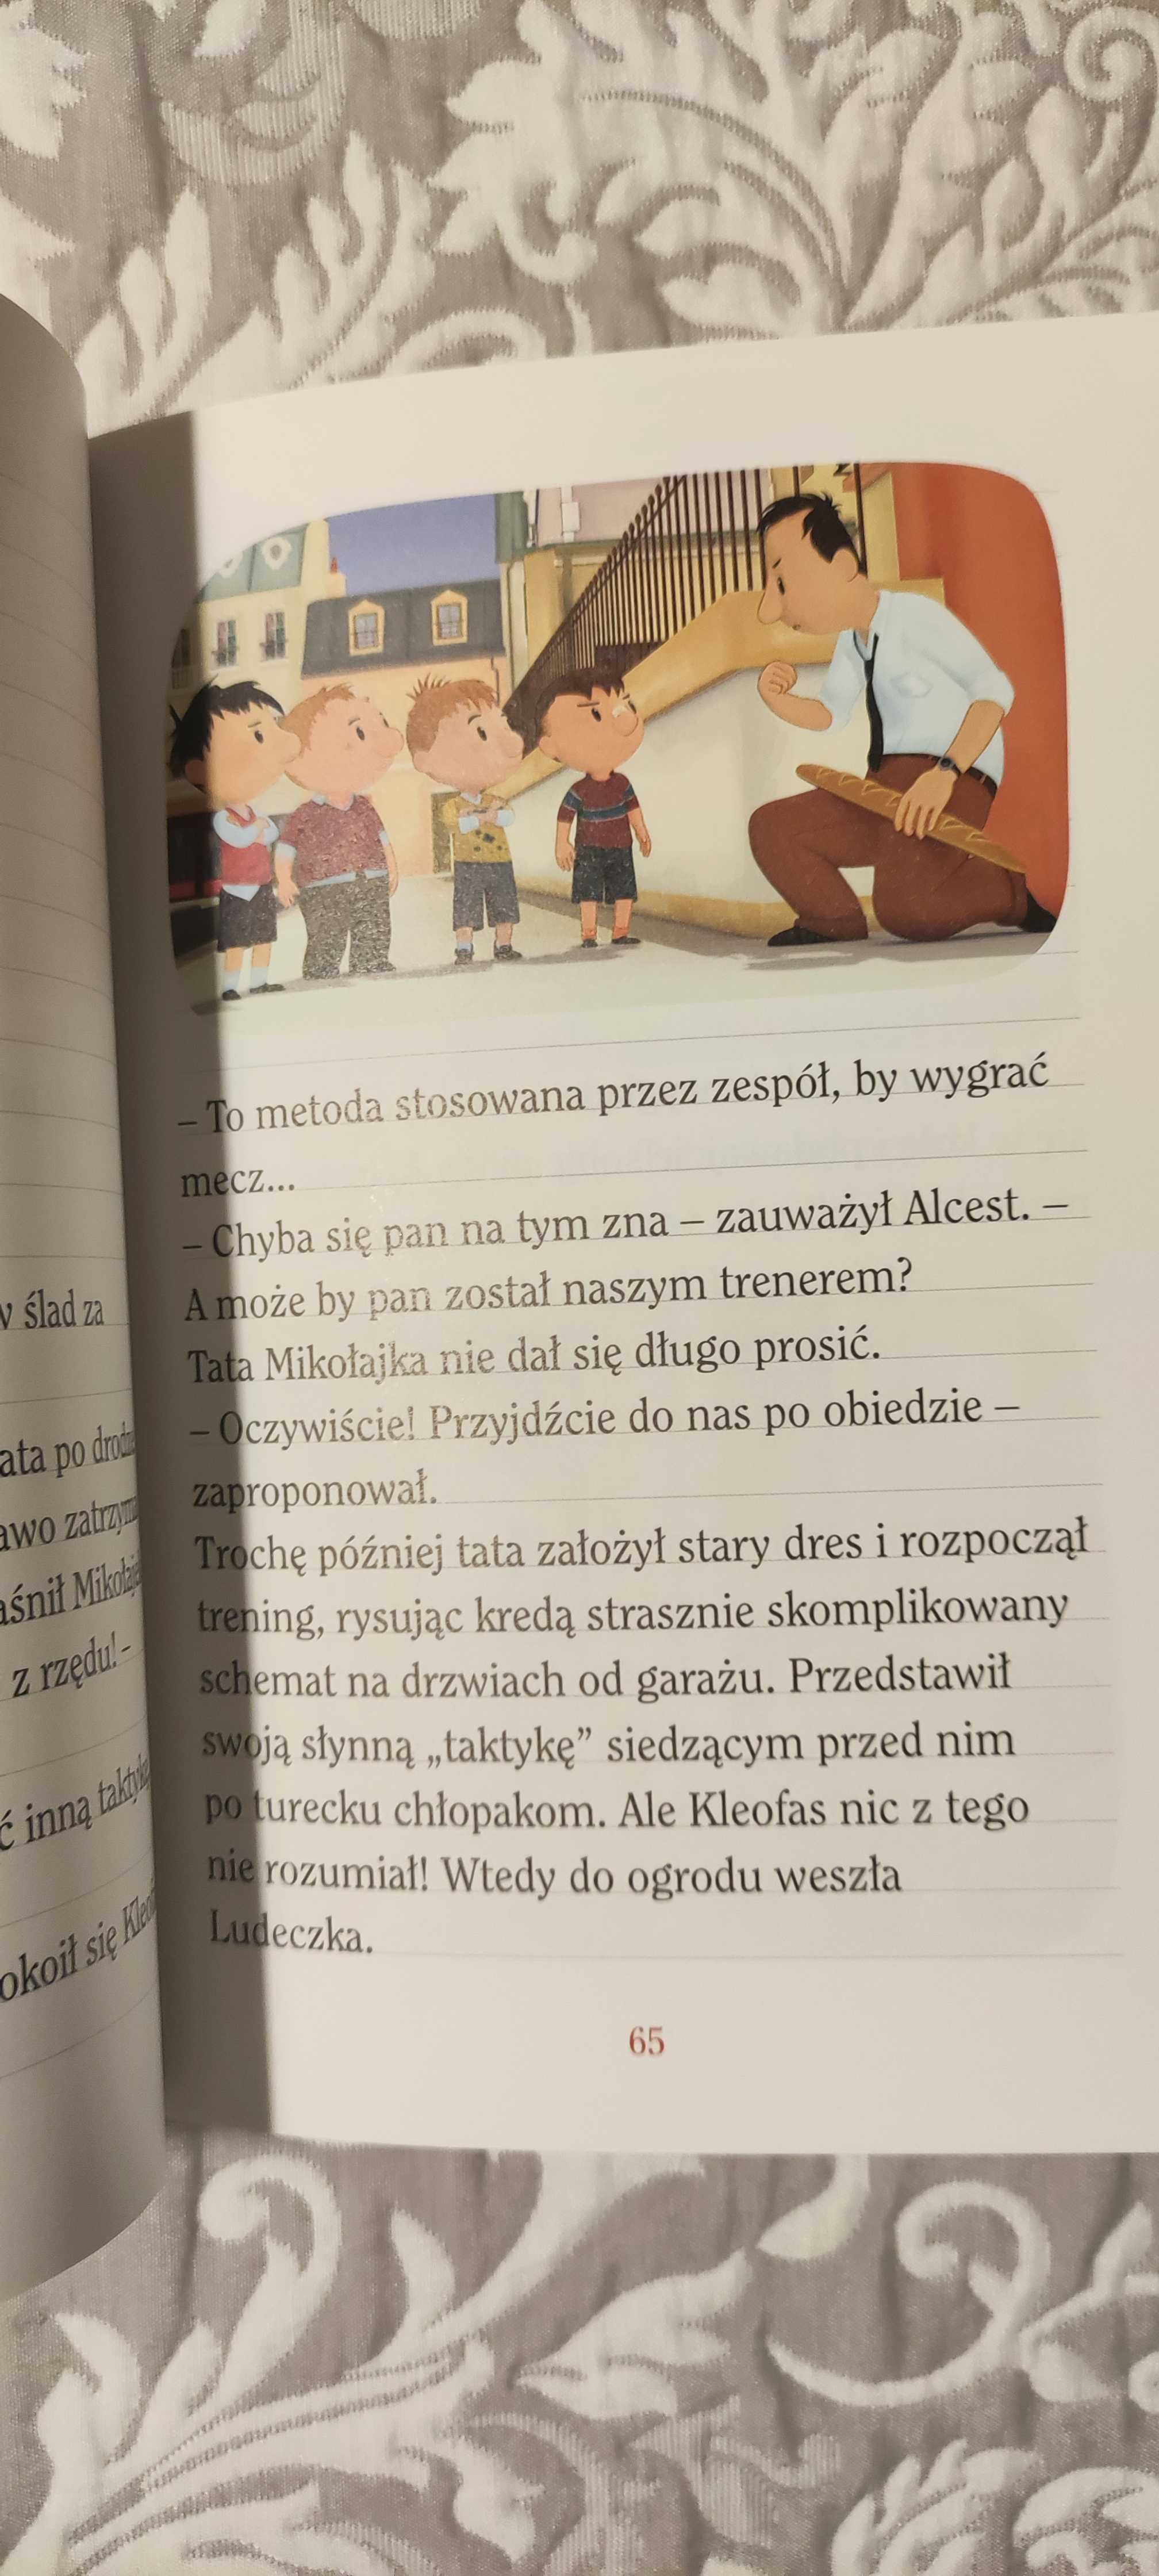 "Podwórkowe przygody Mikołajka" książka